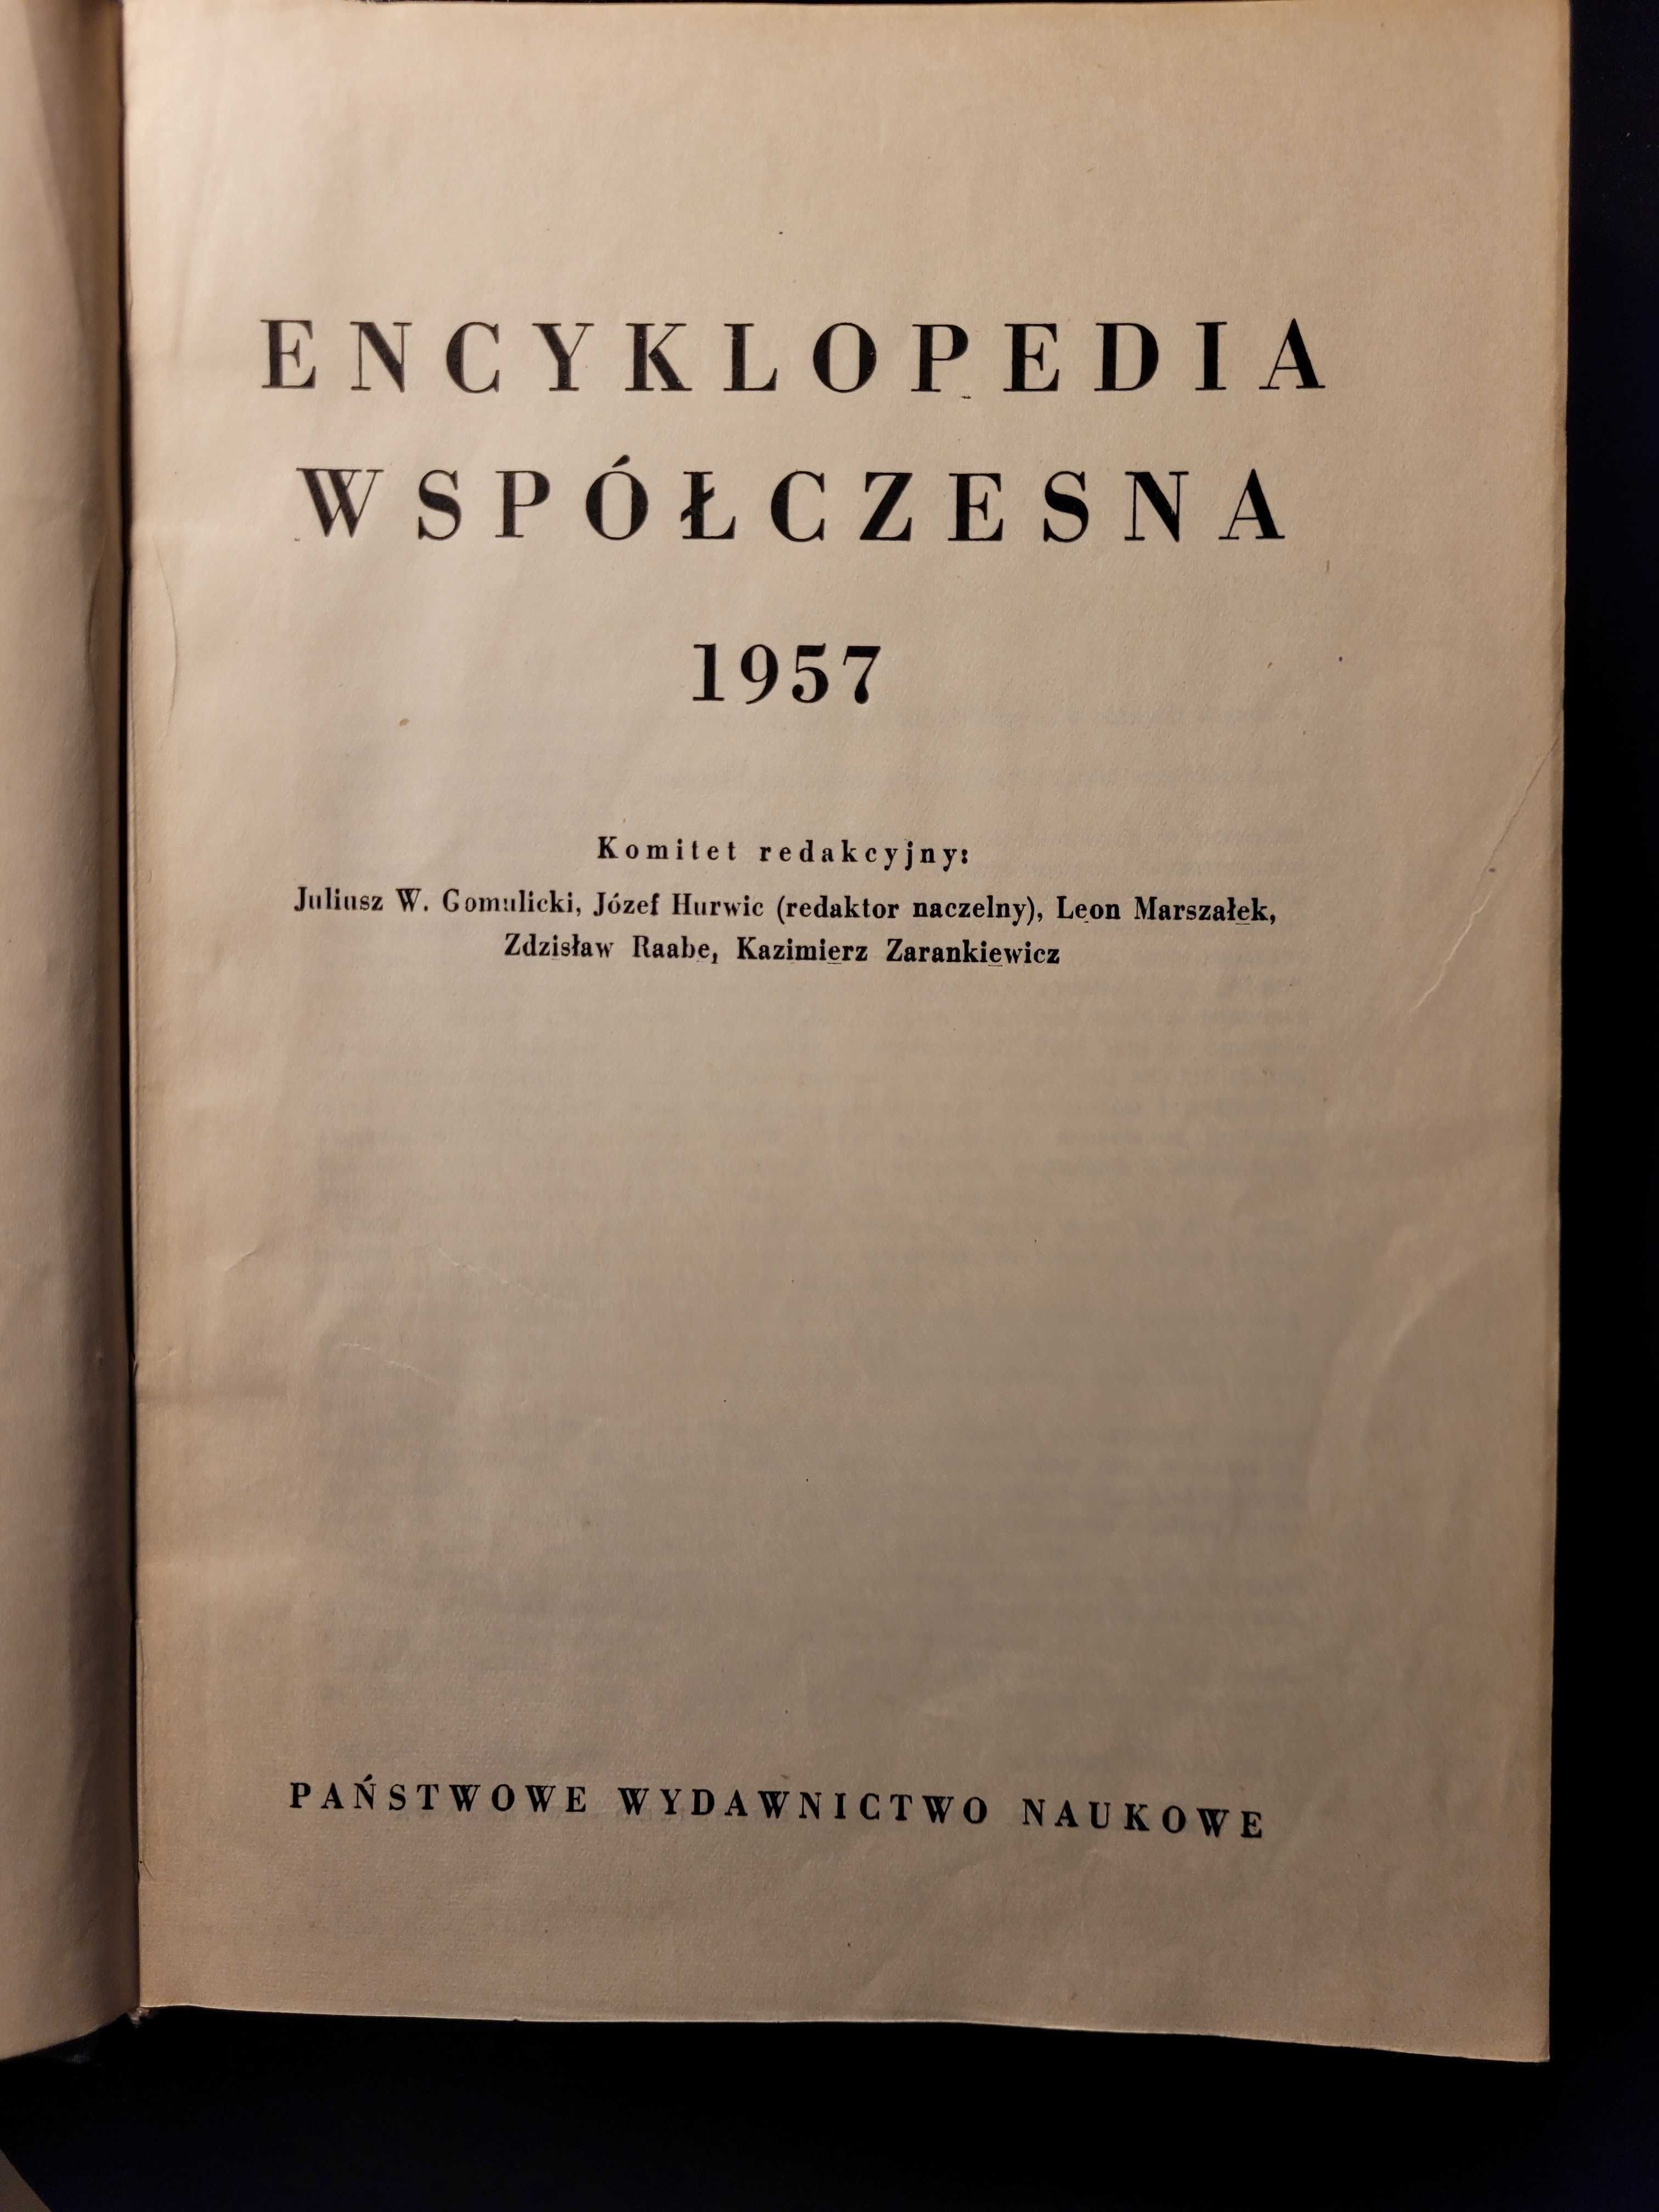 Encyklopedia współczesna rok wydania 1957